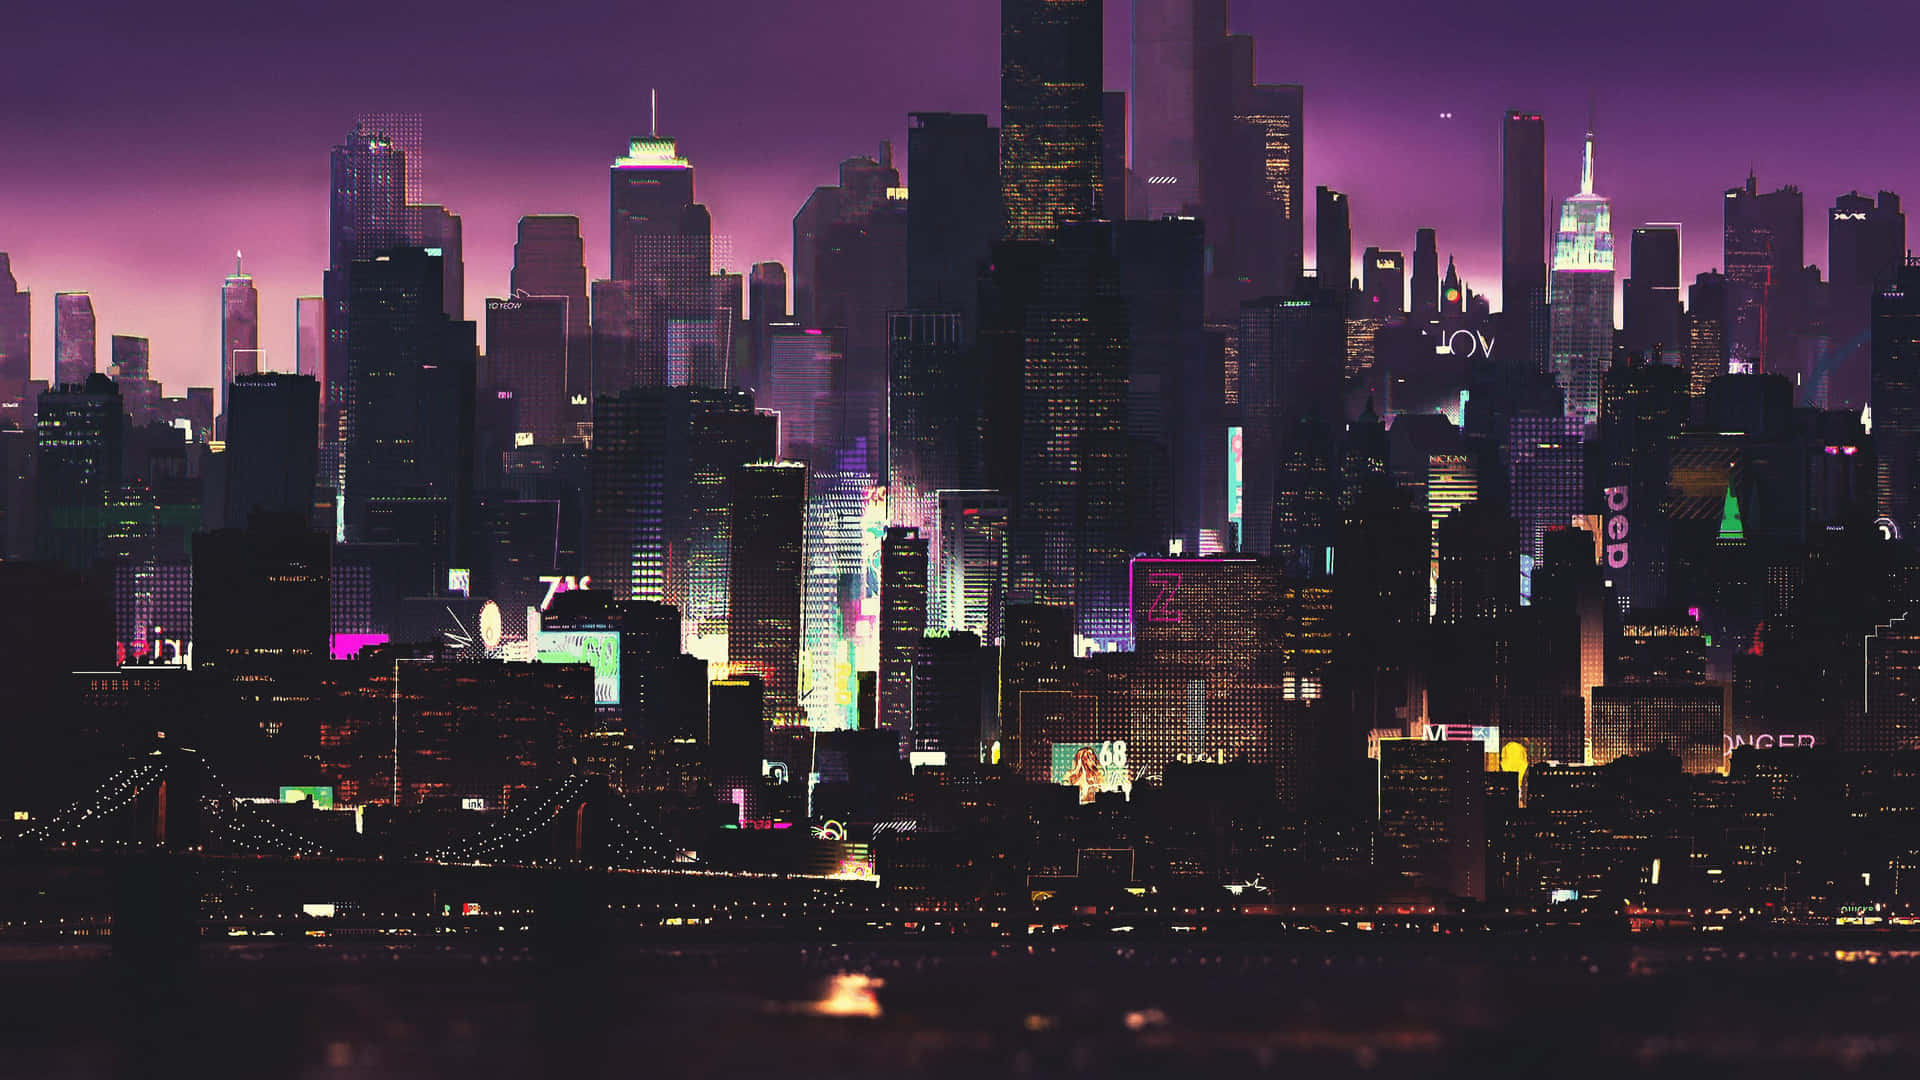 Cyberpunk Car in Night City Wallpaper for Desktop & Laptop in 4K